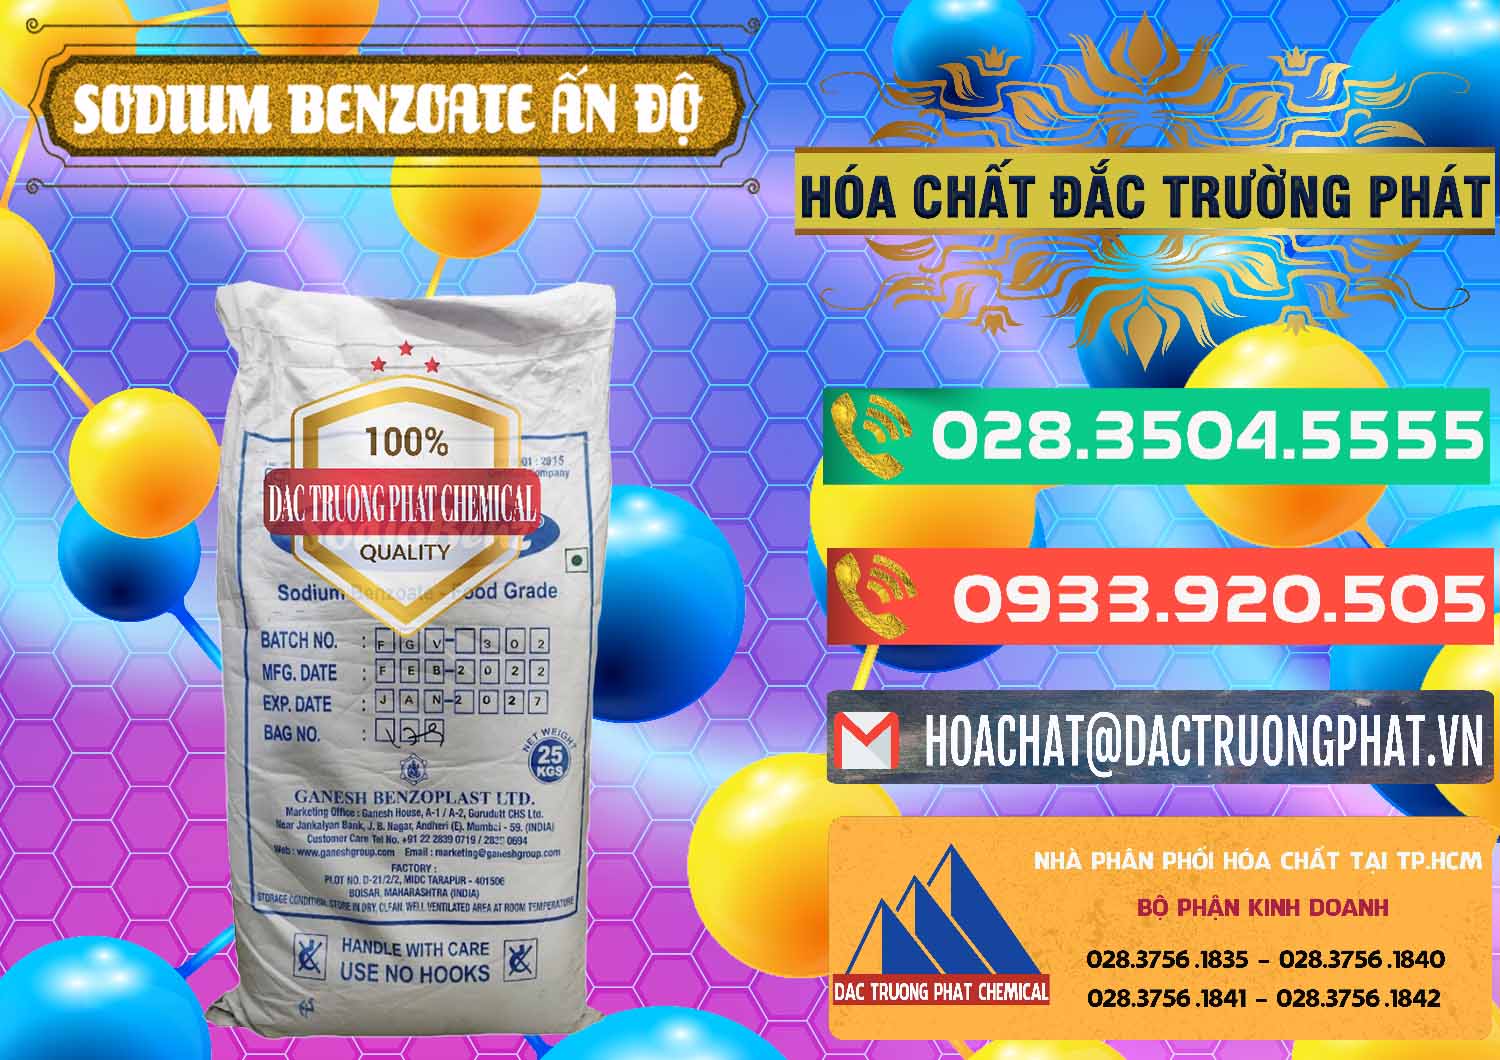 Đơn vị bán & phân phối Sodium Benzoate - Mốc Bột Ấn Độ India - 0361 - Công ty chuyên cung cấp & nhập khẩu hóa chất tại TP.HCM - congtyhoachat.com.vn